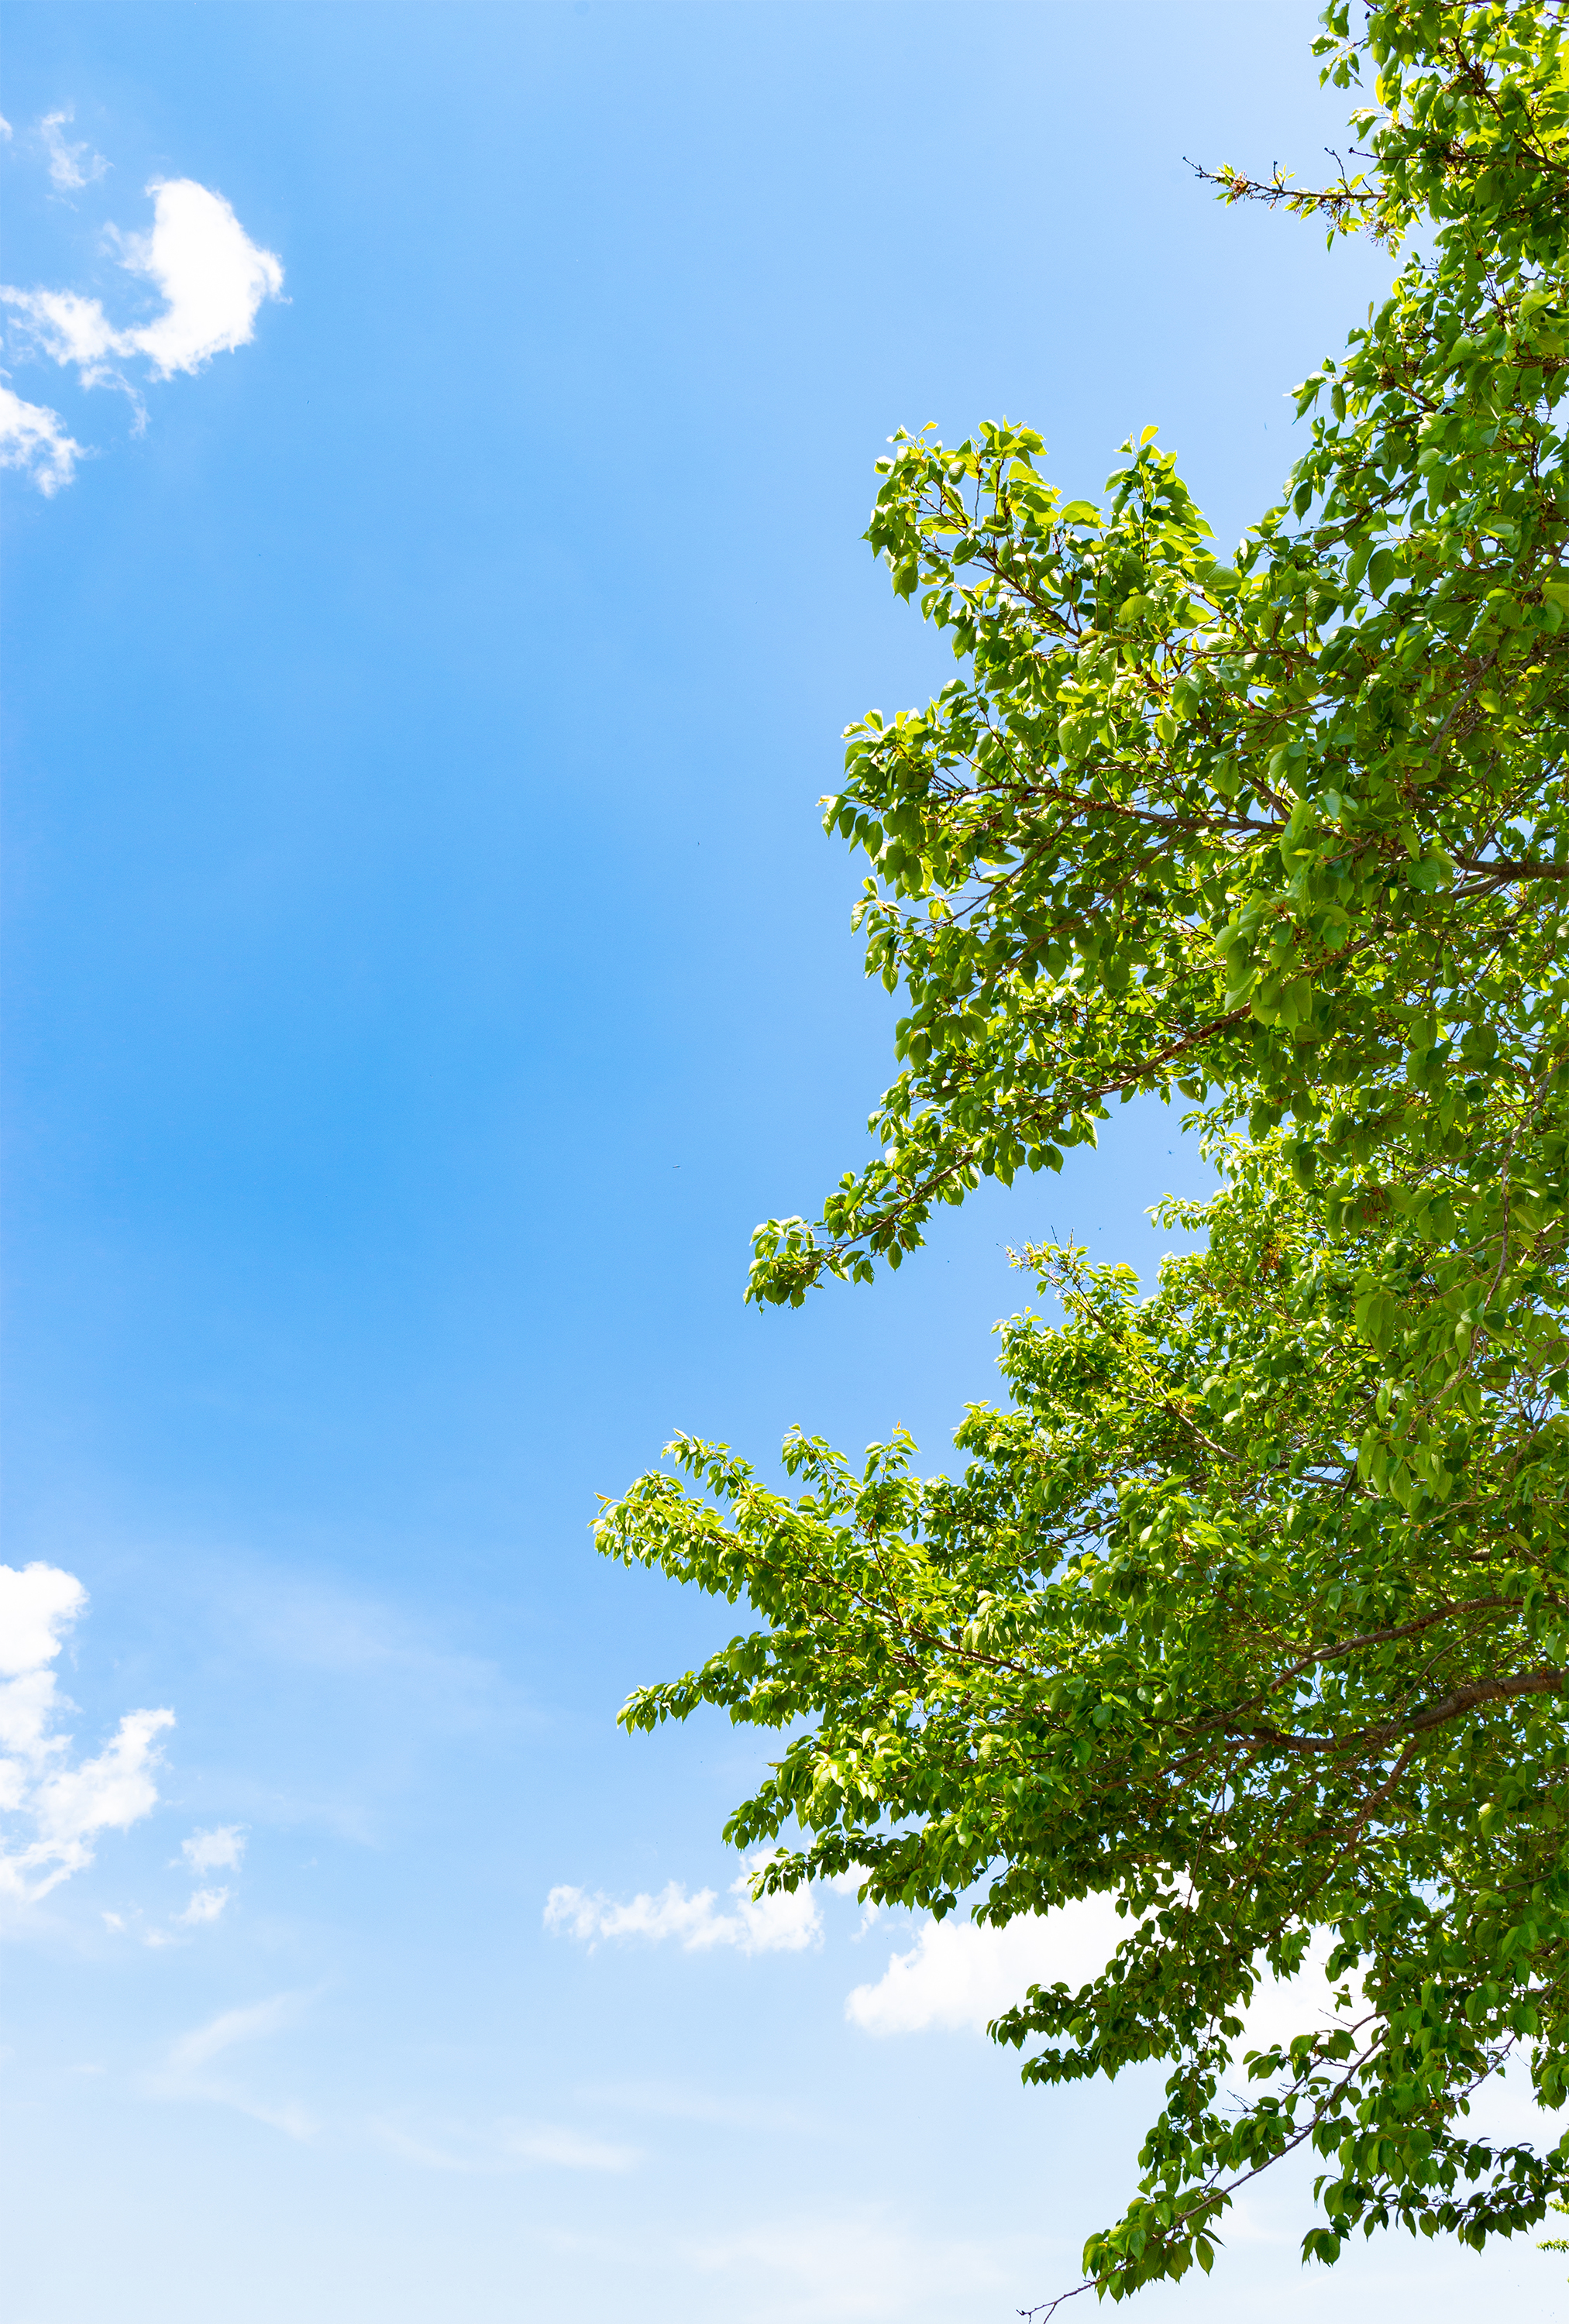 5月の新緑と青空02 無料の高画質フリー写真素材 イメージズラボ